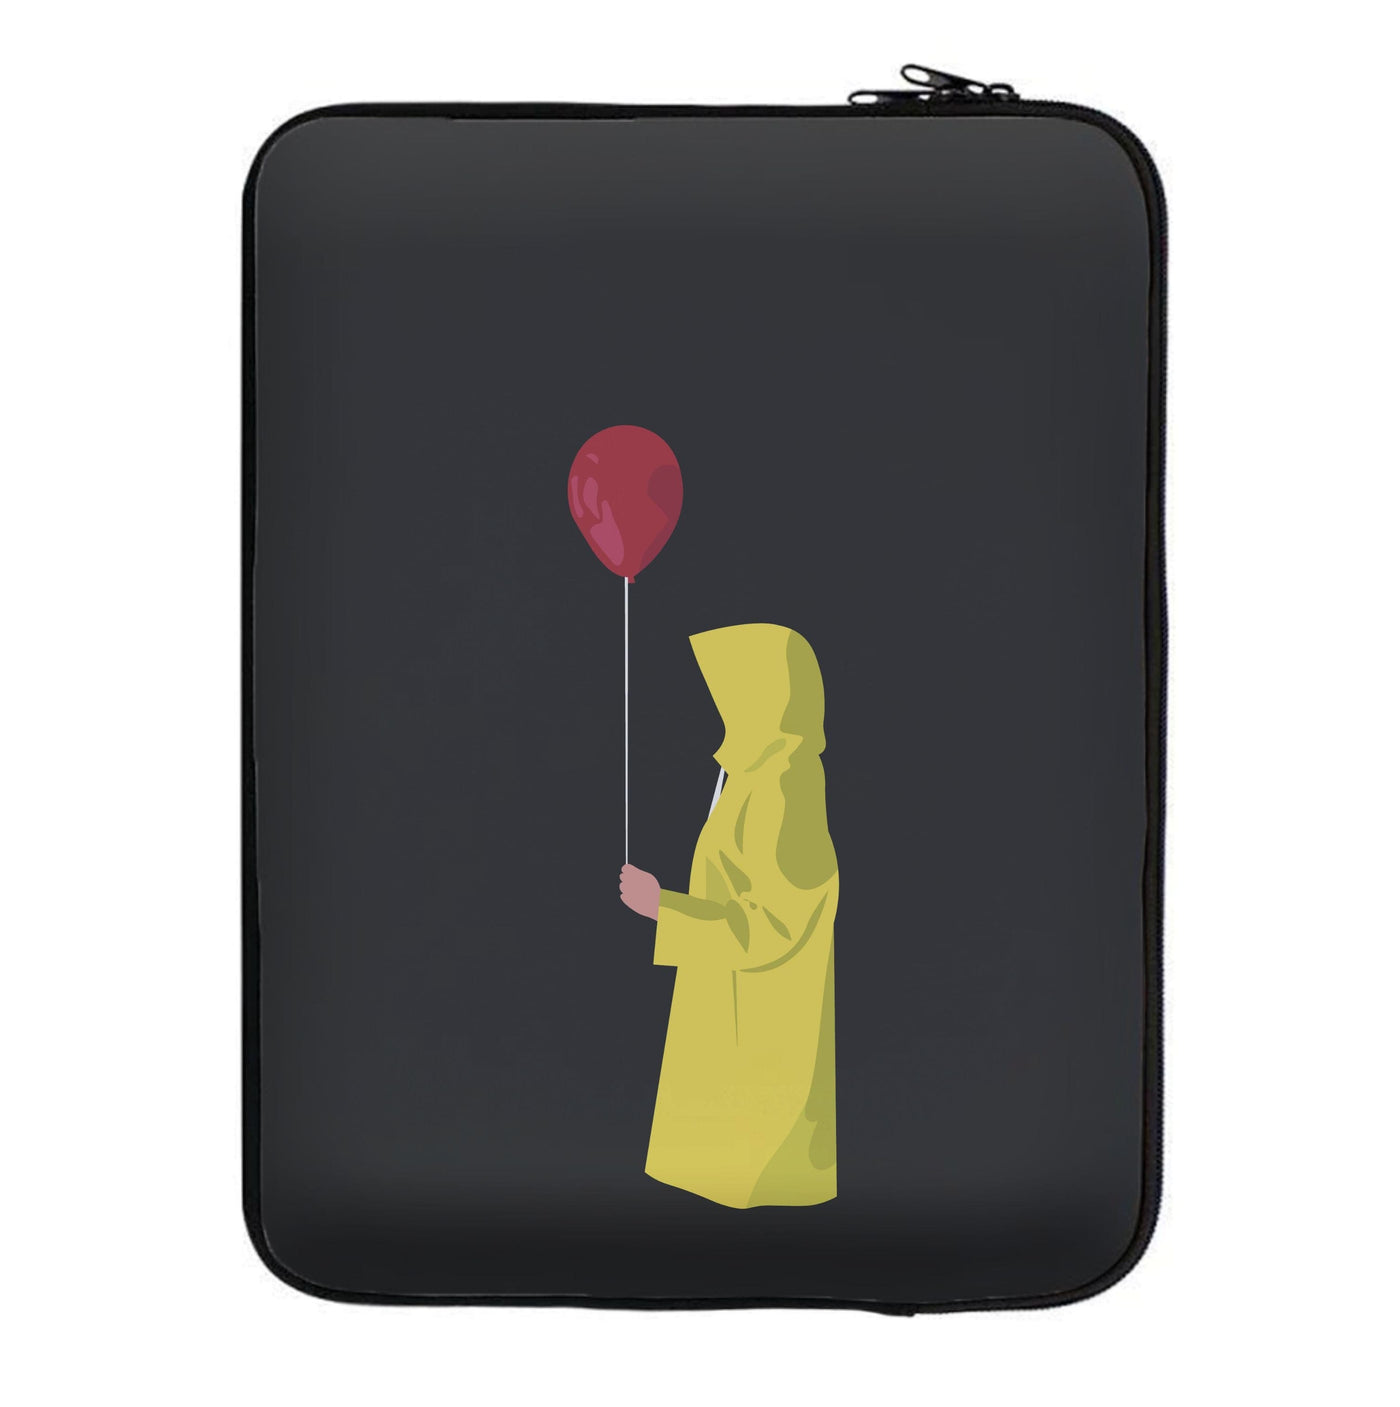 Holding Balloon - IT The Clown Laptop Sleeve